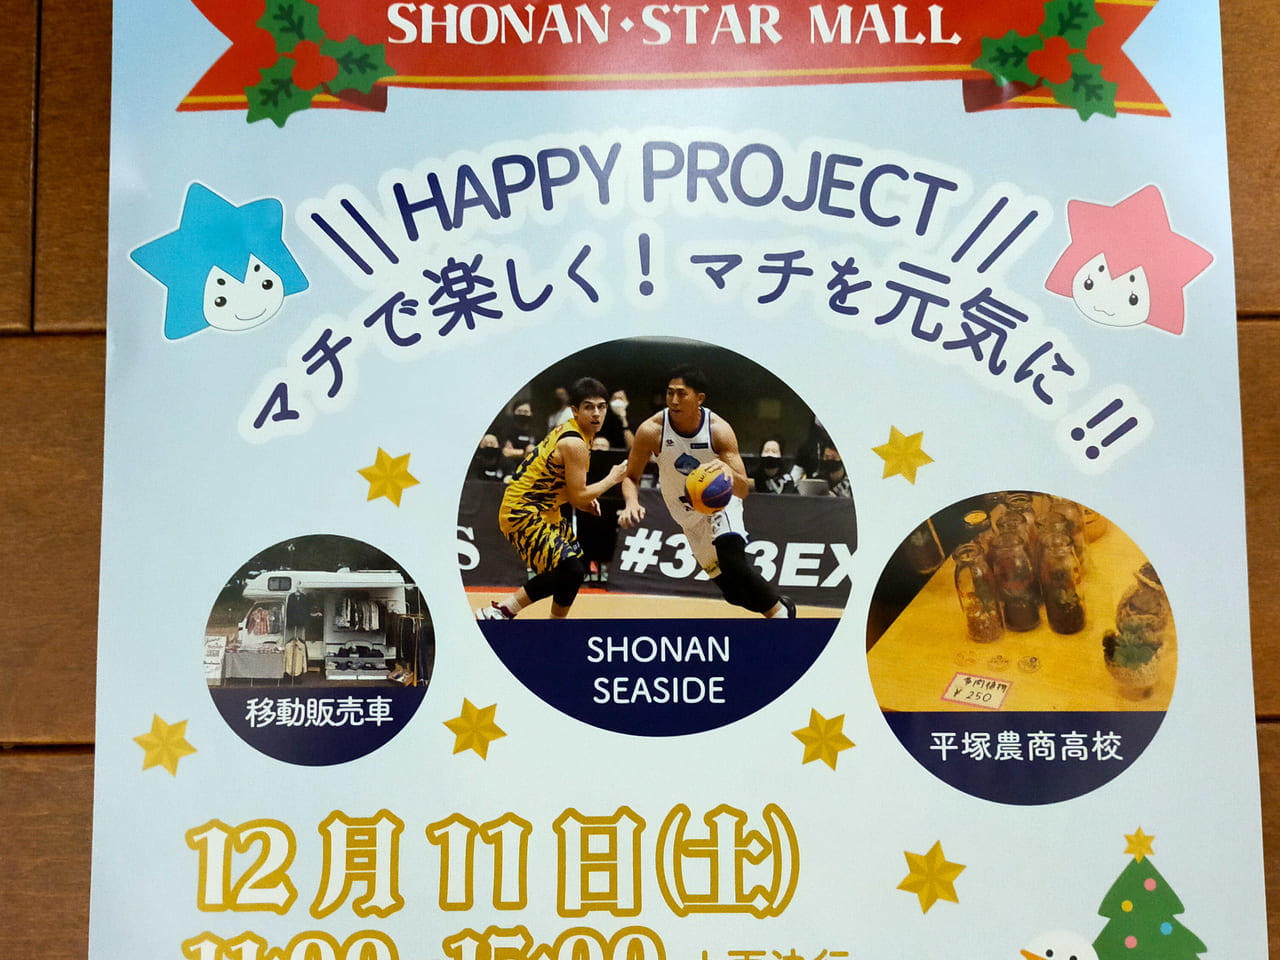 プロバスケットチーム「SHONAN SEASIDE」のフリースロー体験も！湘南スターモール商店街で「”HAPPY PROJECT" マチで楽しく！マチを元気に‼」が開催されます！